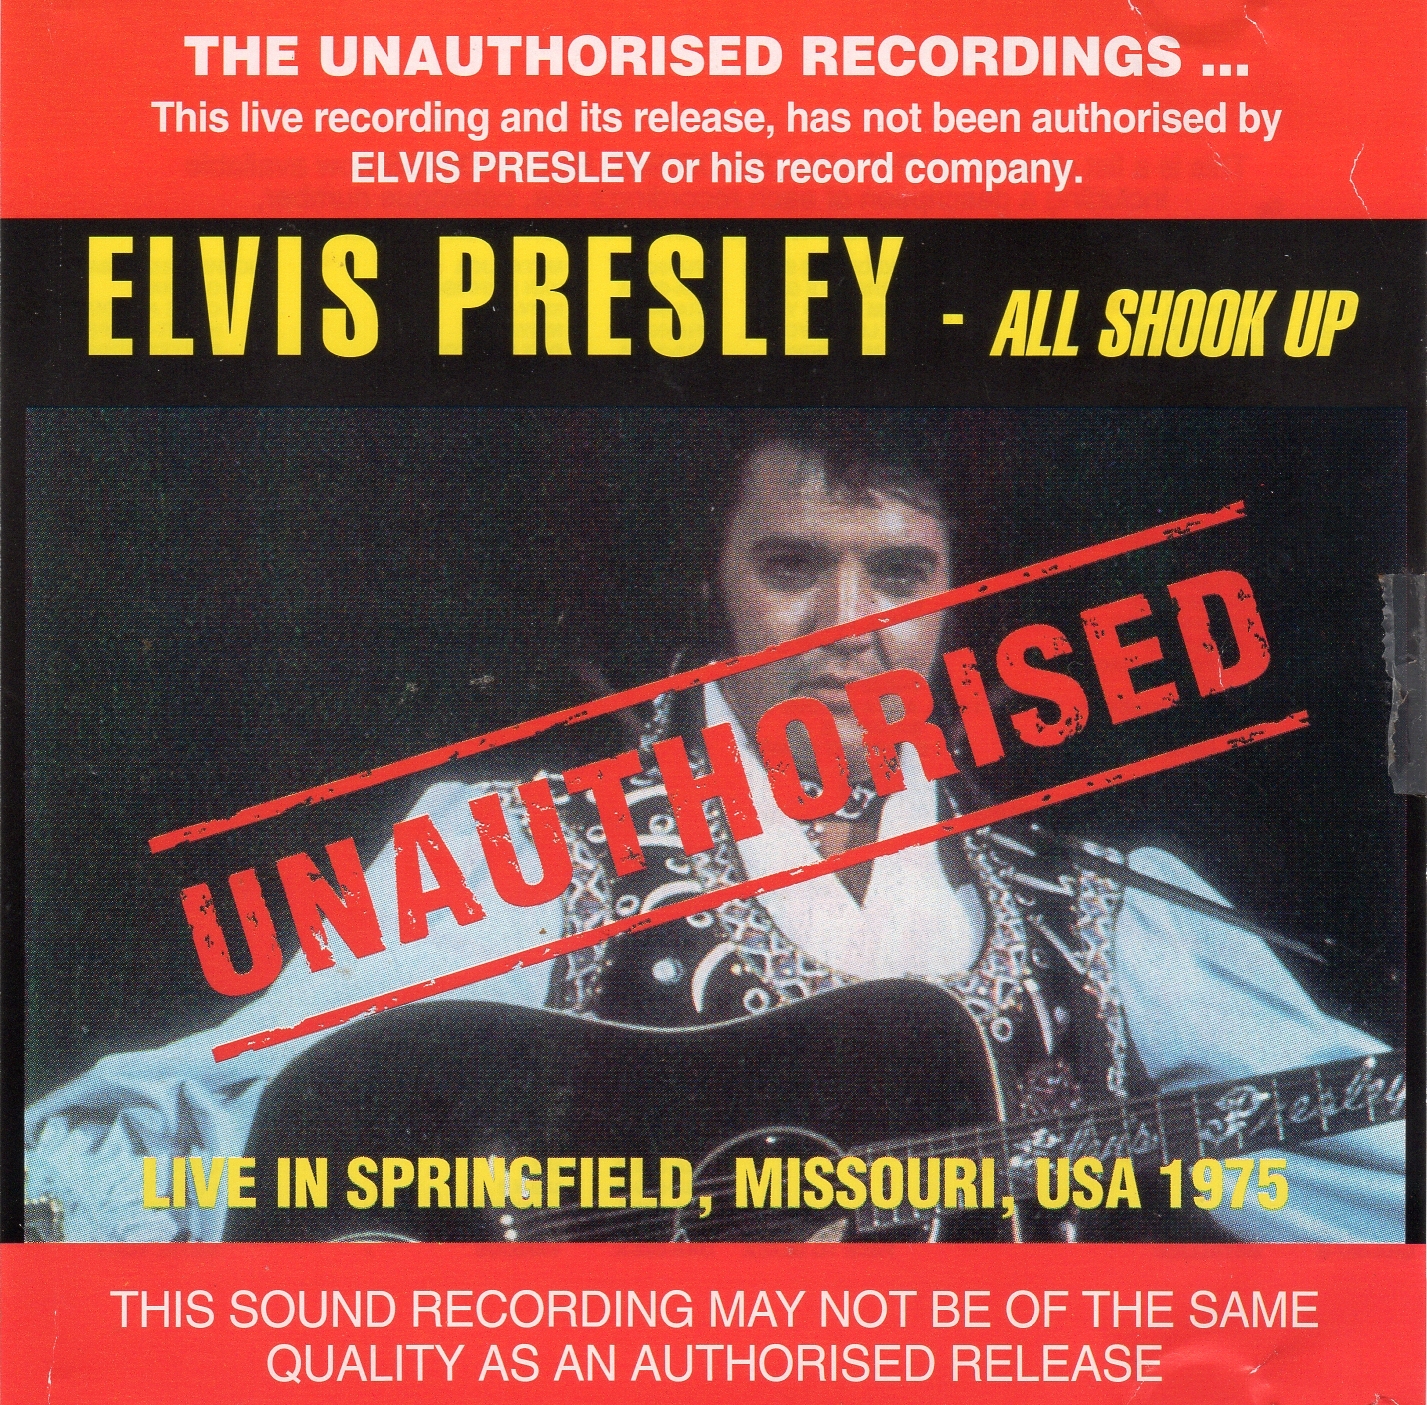 All shook up. Elvis Presley all Shook up. Элвис Пресли all Shook up альбом. Elvis Presley обложка. Двойная пластинка Элвис Пресли.